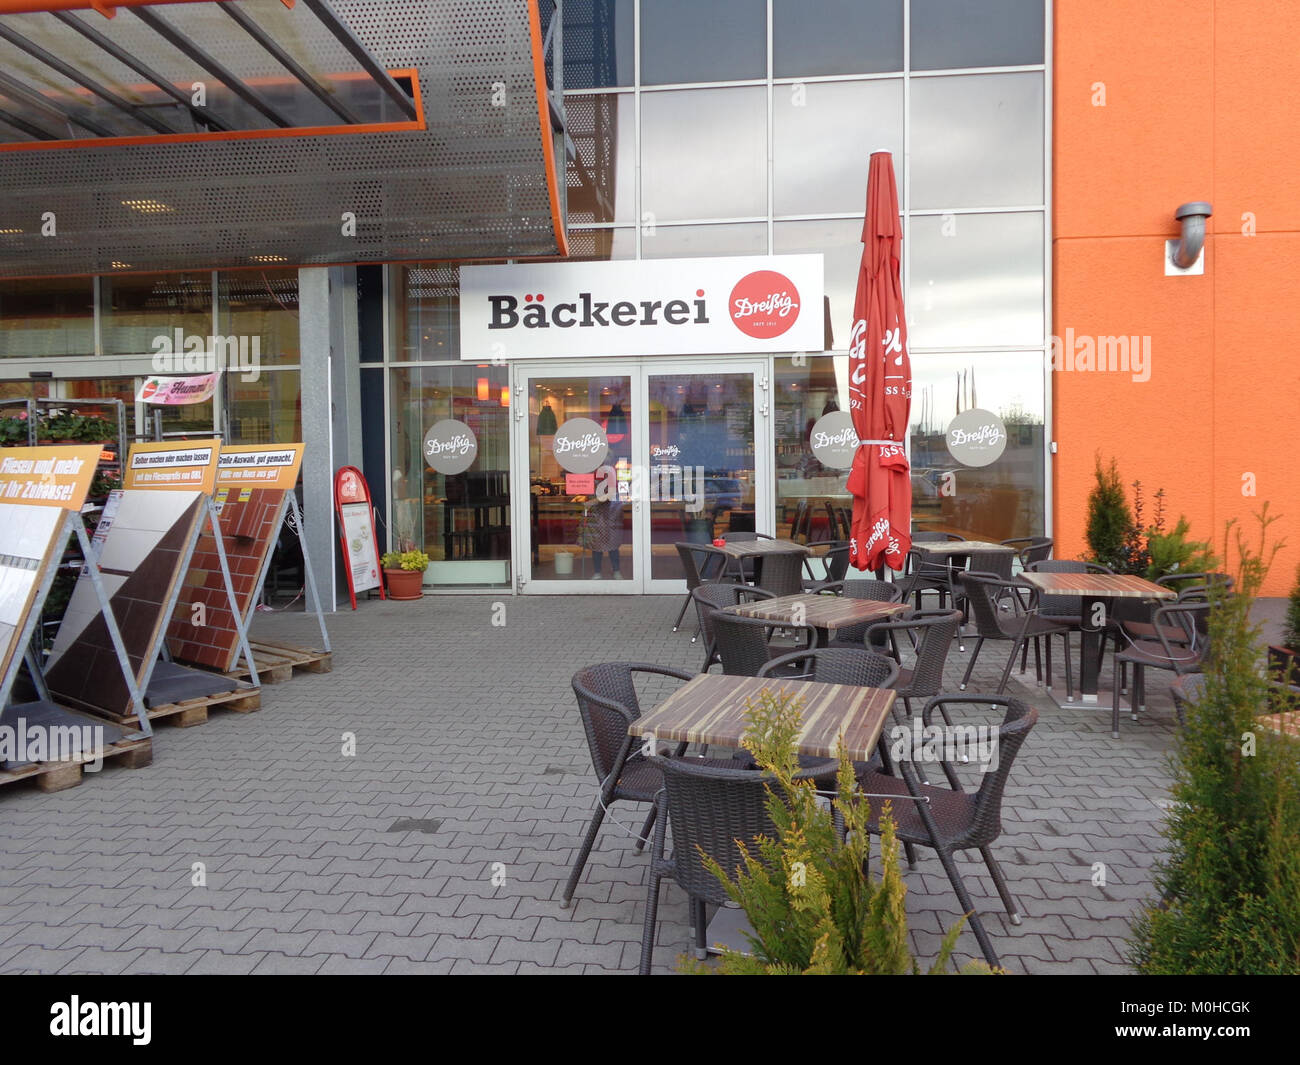 Bäckerei Dreissig bei OBI in Berlin-Treptow Stock Photo